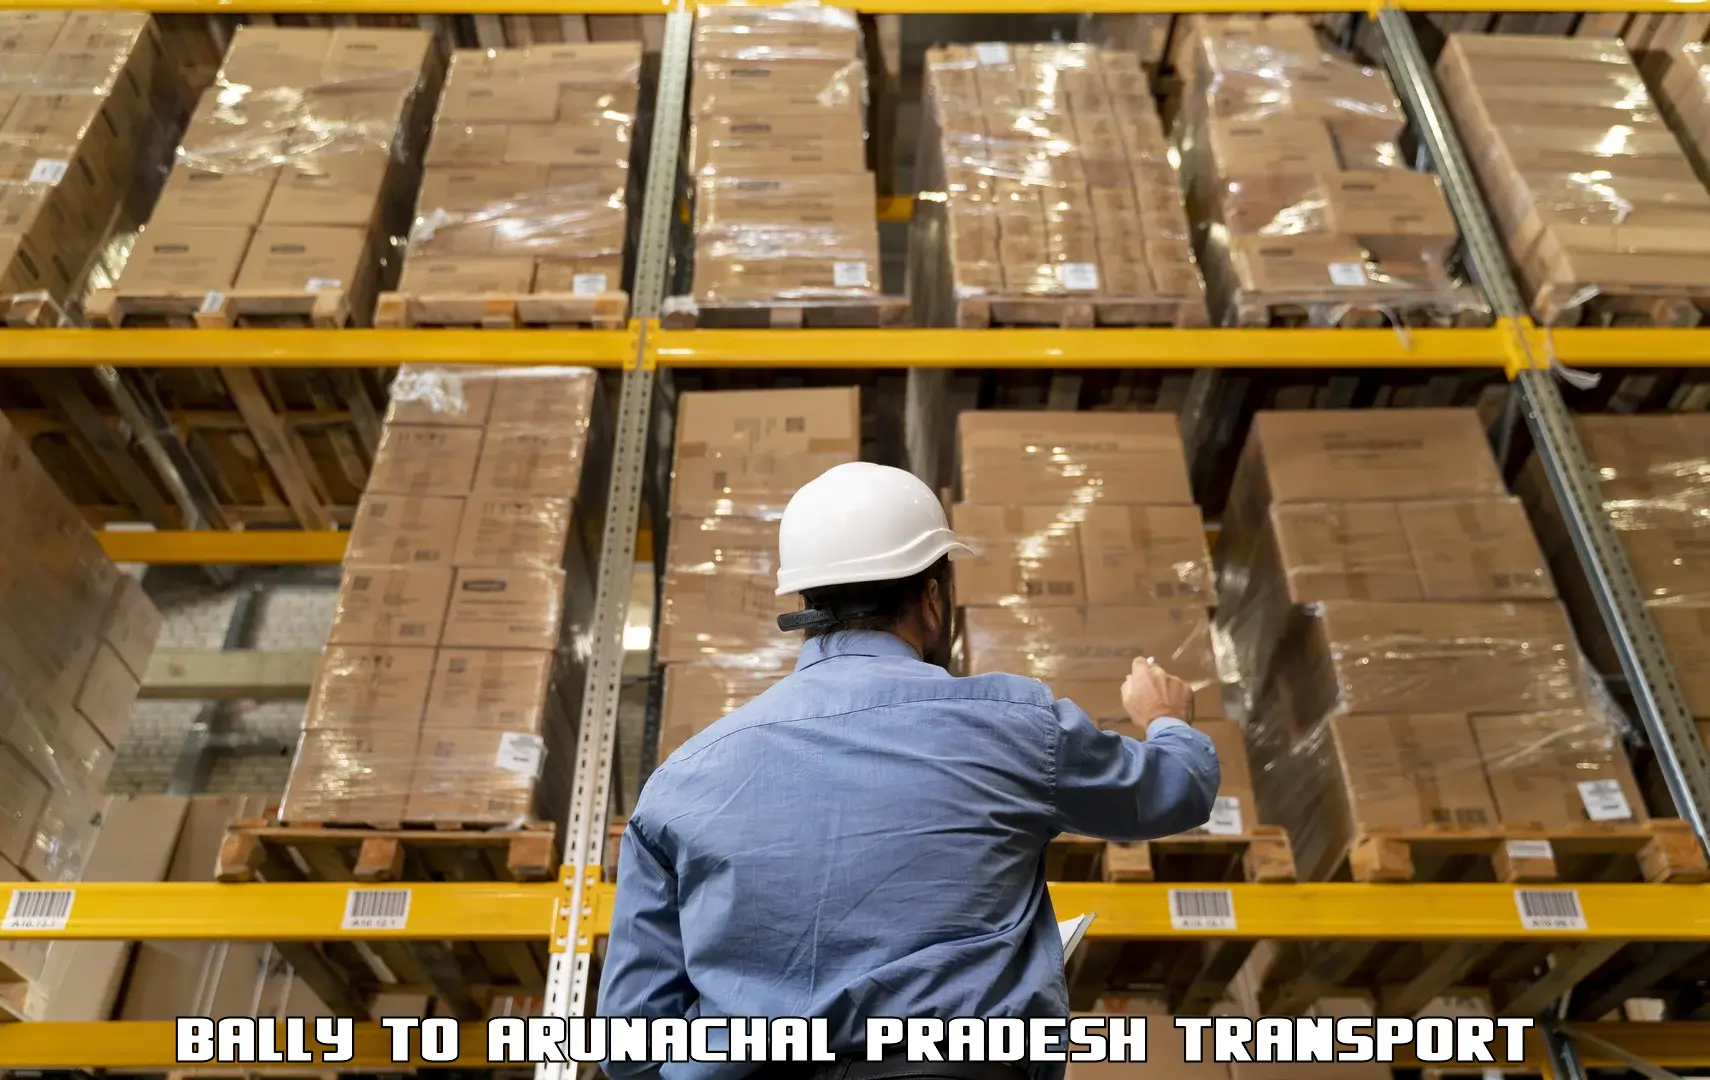 Cargo transport services Bally to Boleng